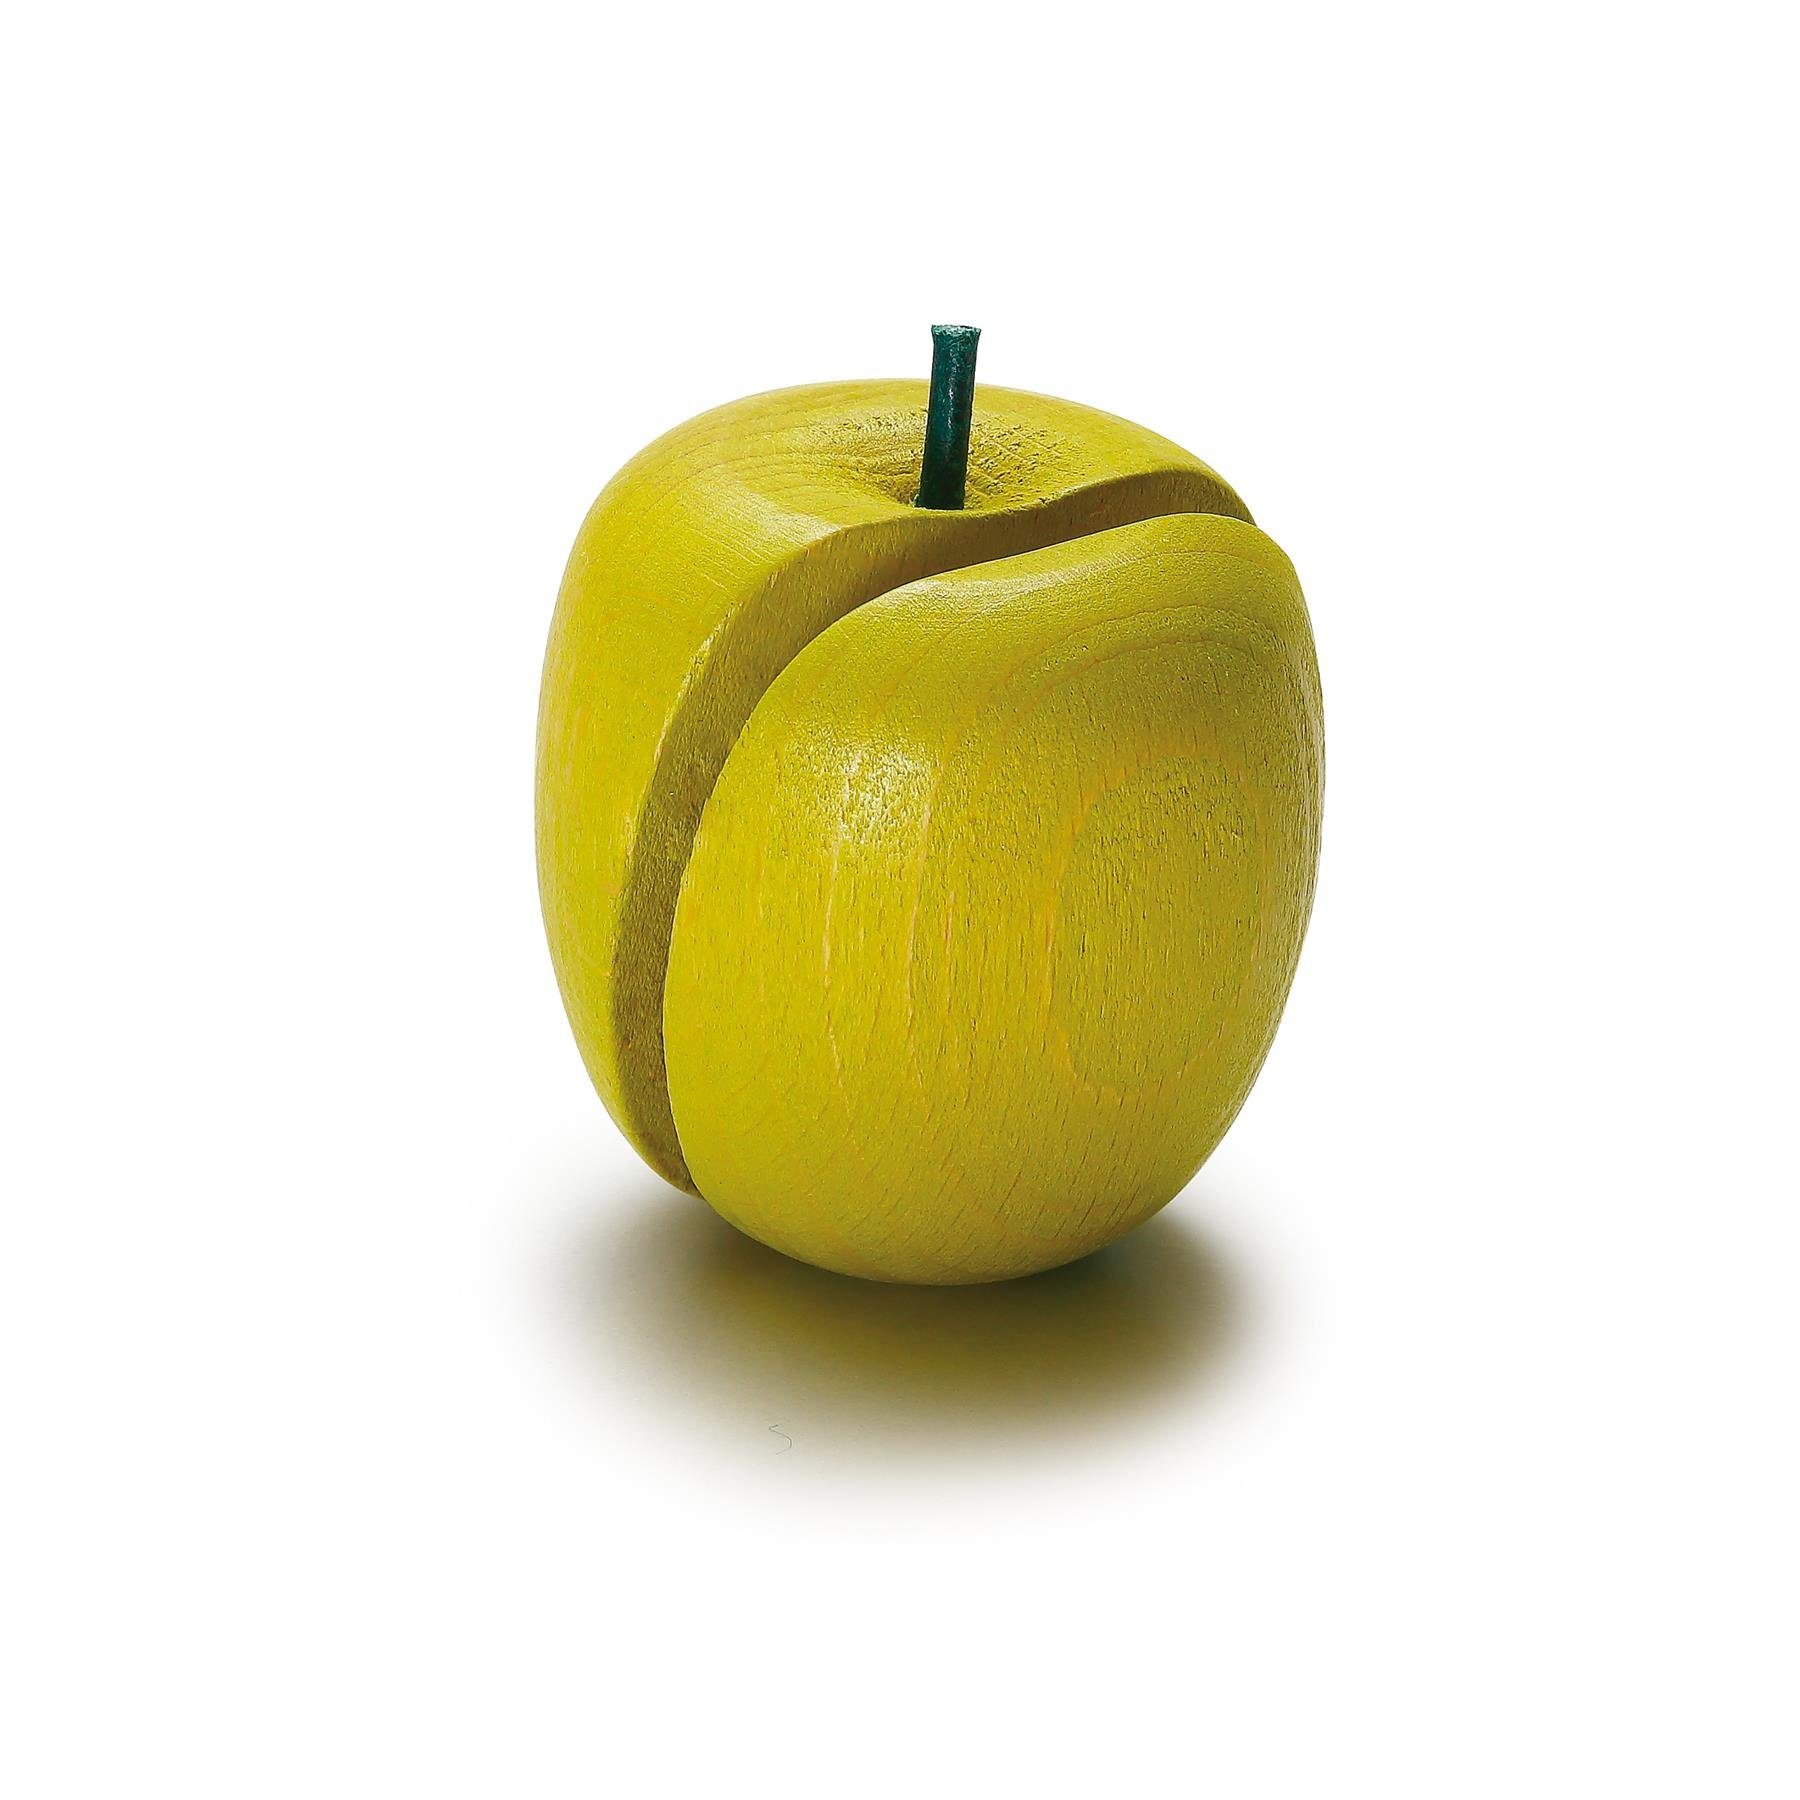 Erzi® Kaufladensortiment Erzi Apfel zum Kaufladenzubehör Schneiden 